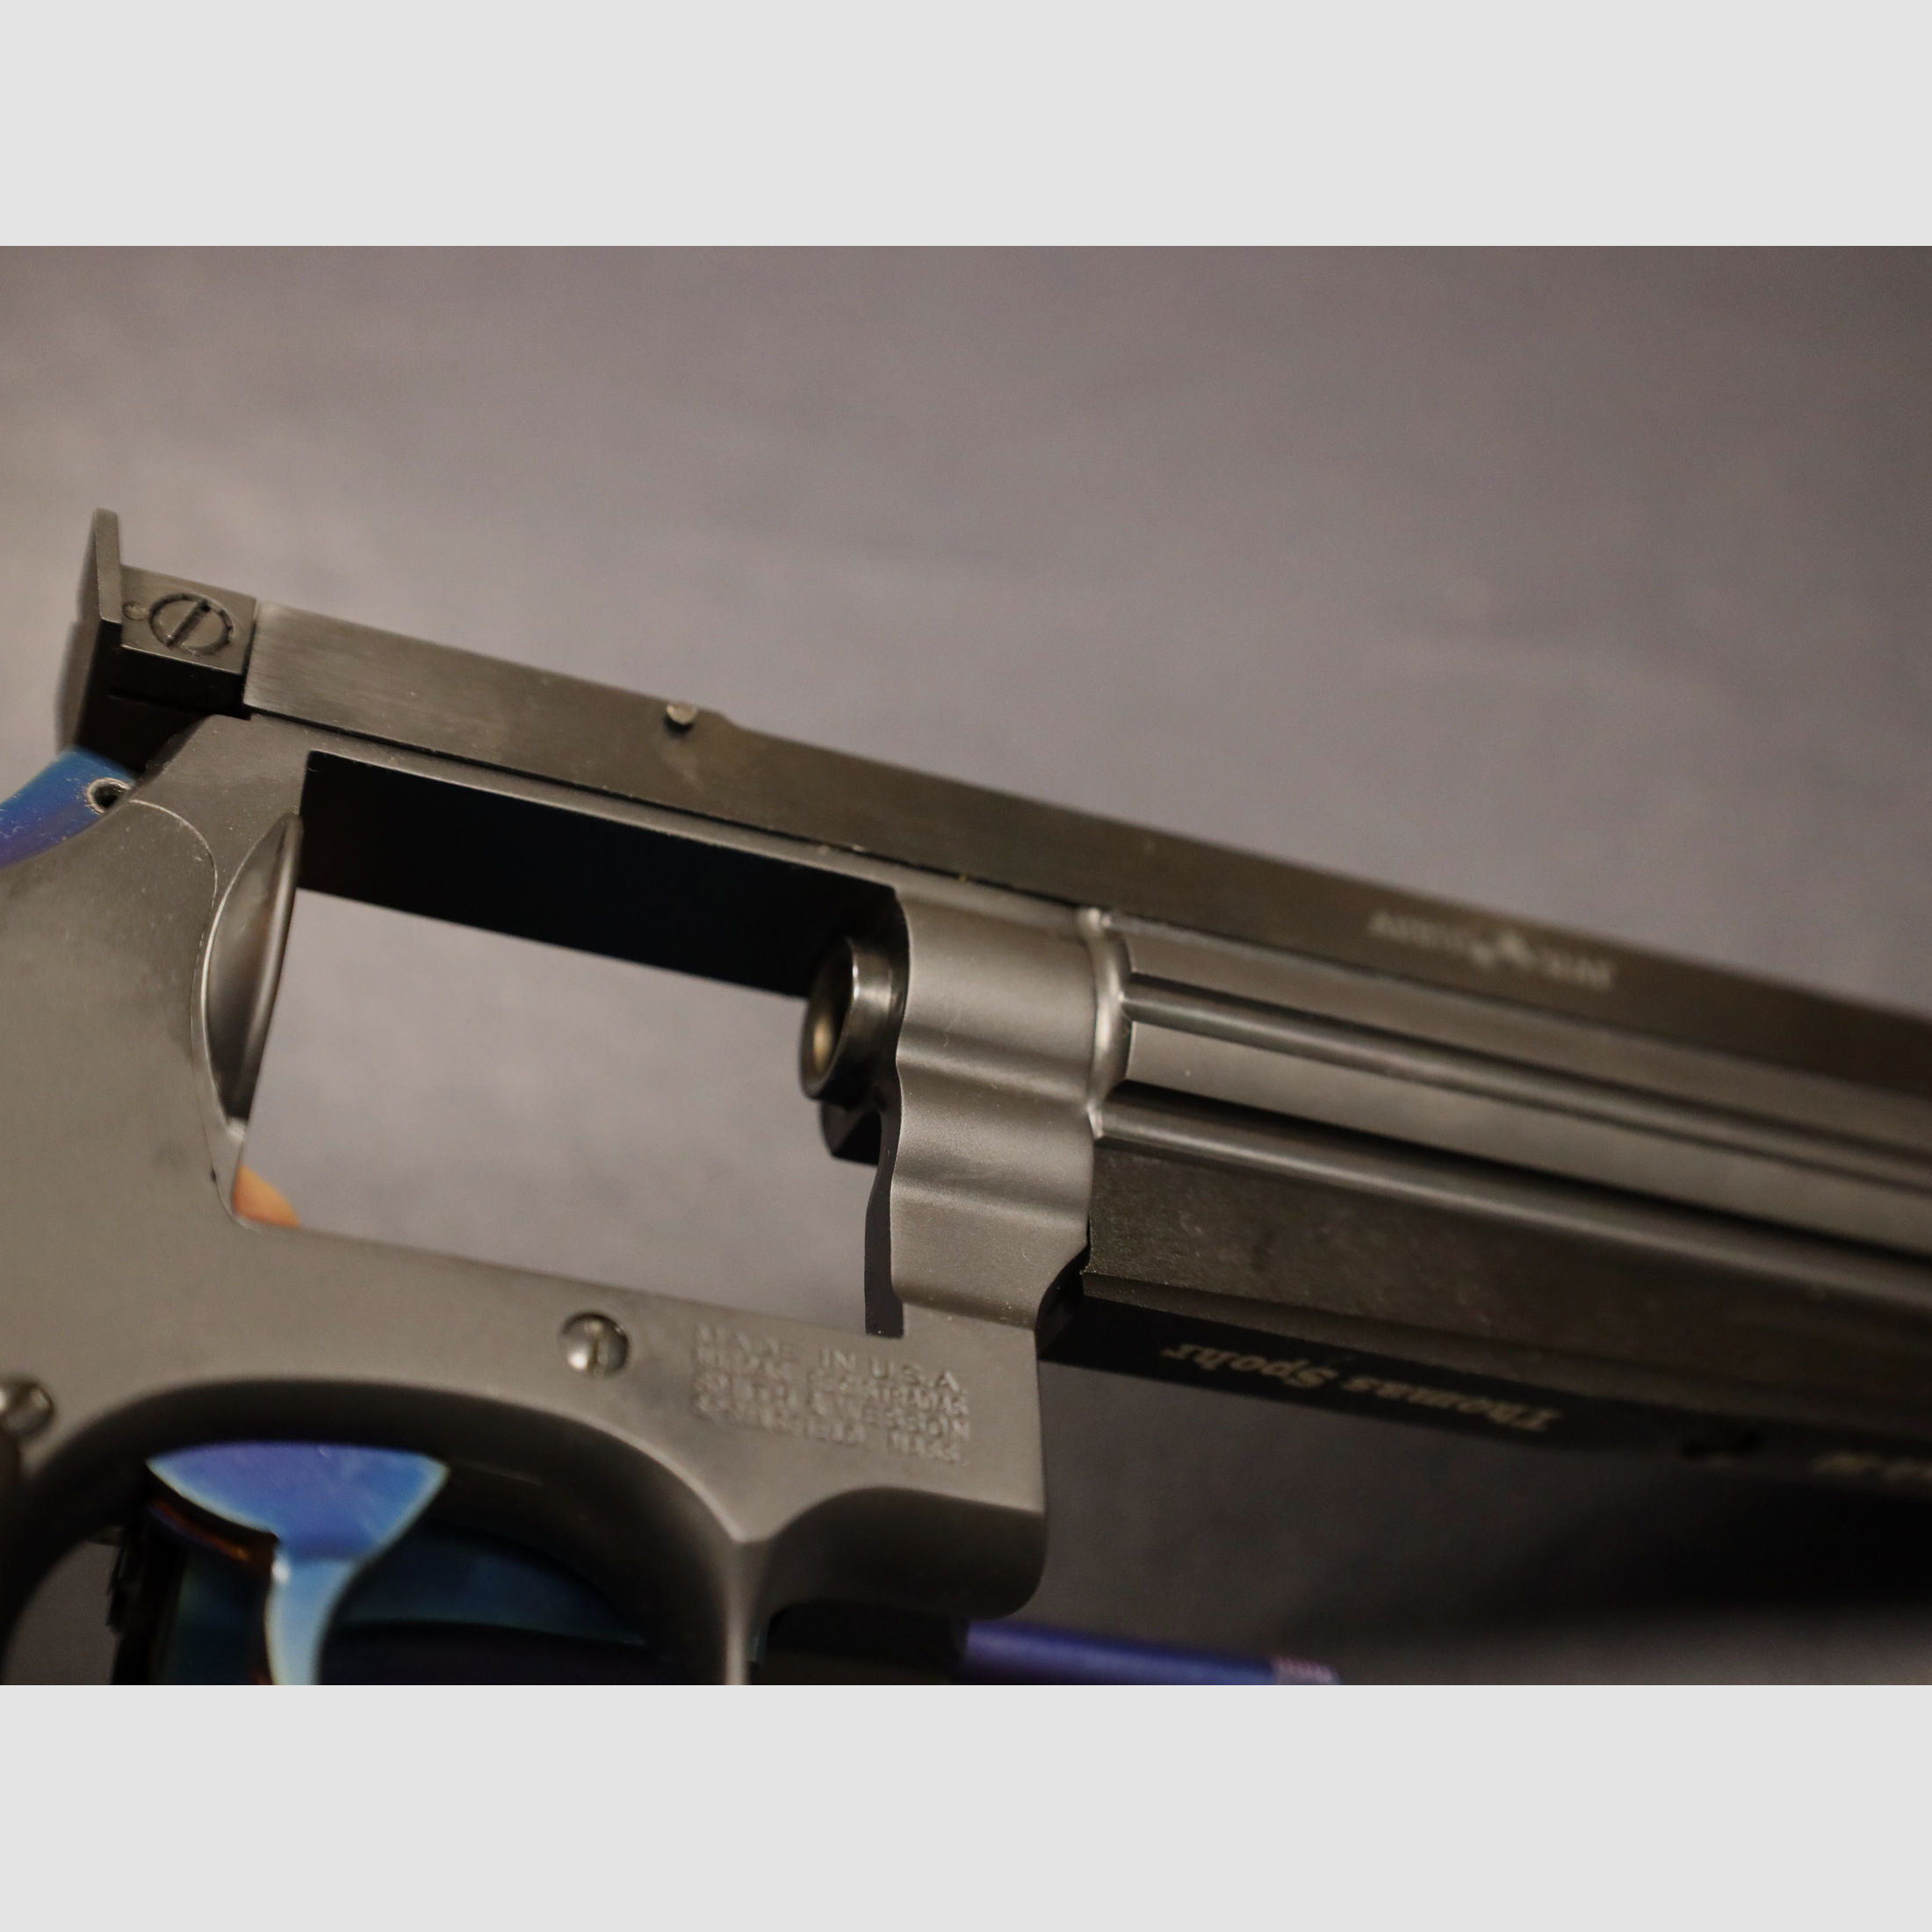 Club 30 Smith&Wesson 568-3 Liebhaberstück 9mm Luger